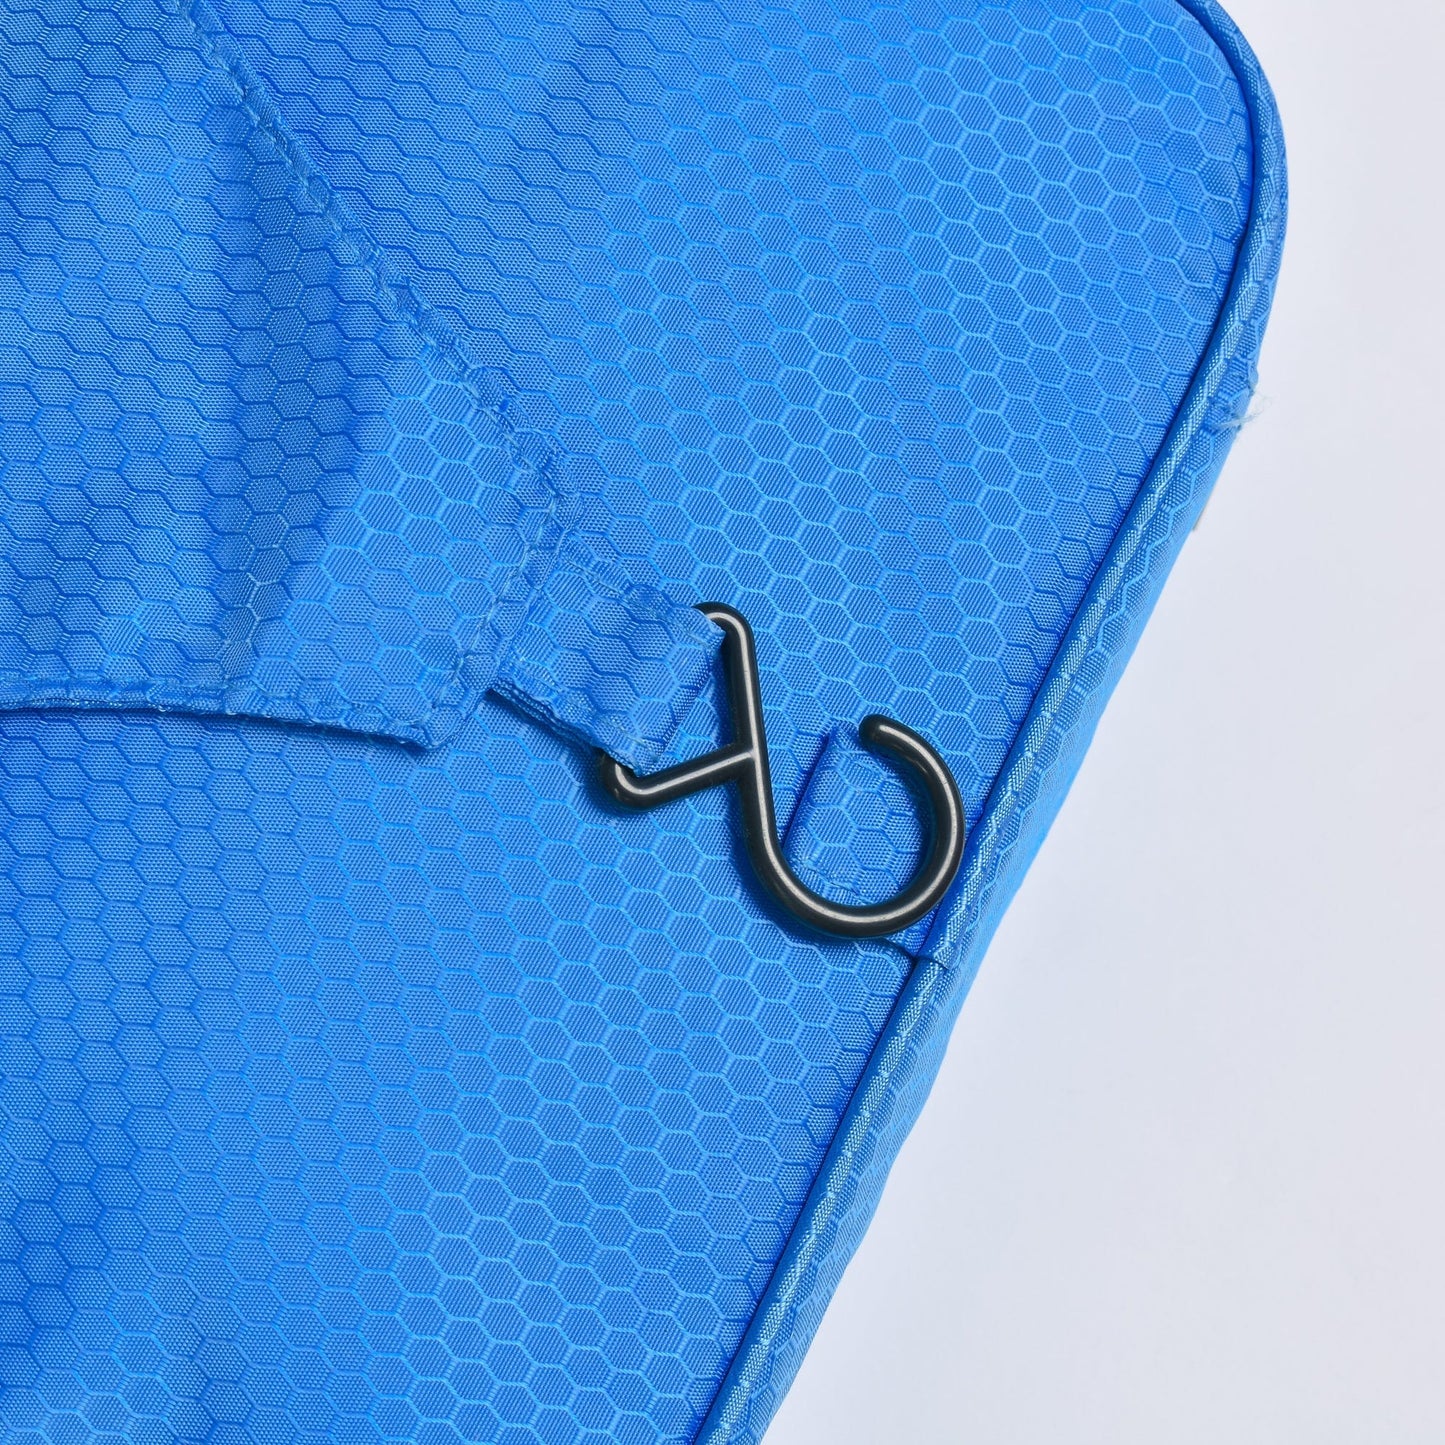 Flightmode toiletry bag Travel Waterproof Hanging Toiletry Bag - Blue